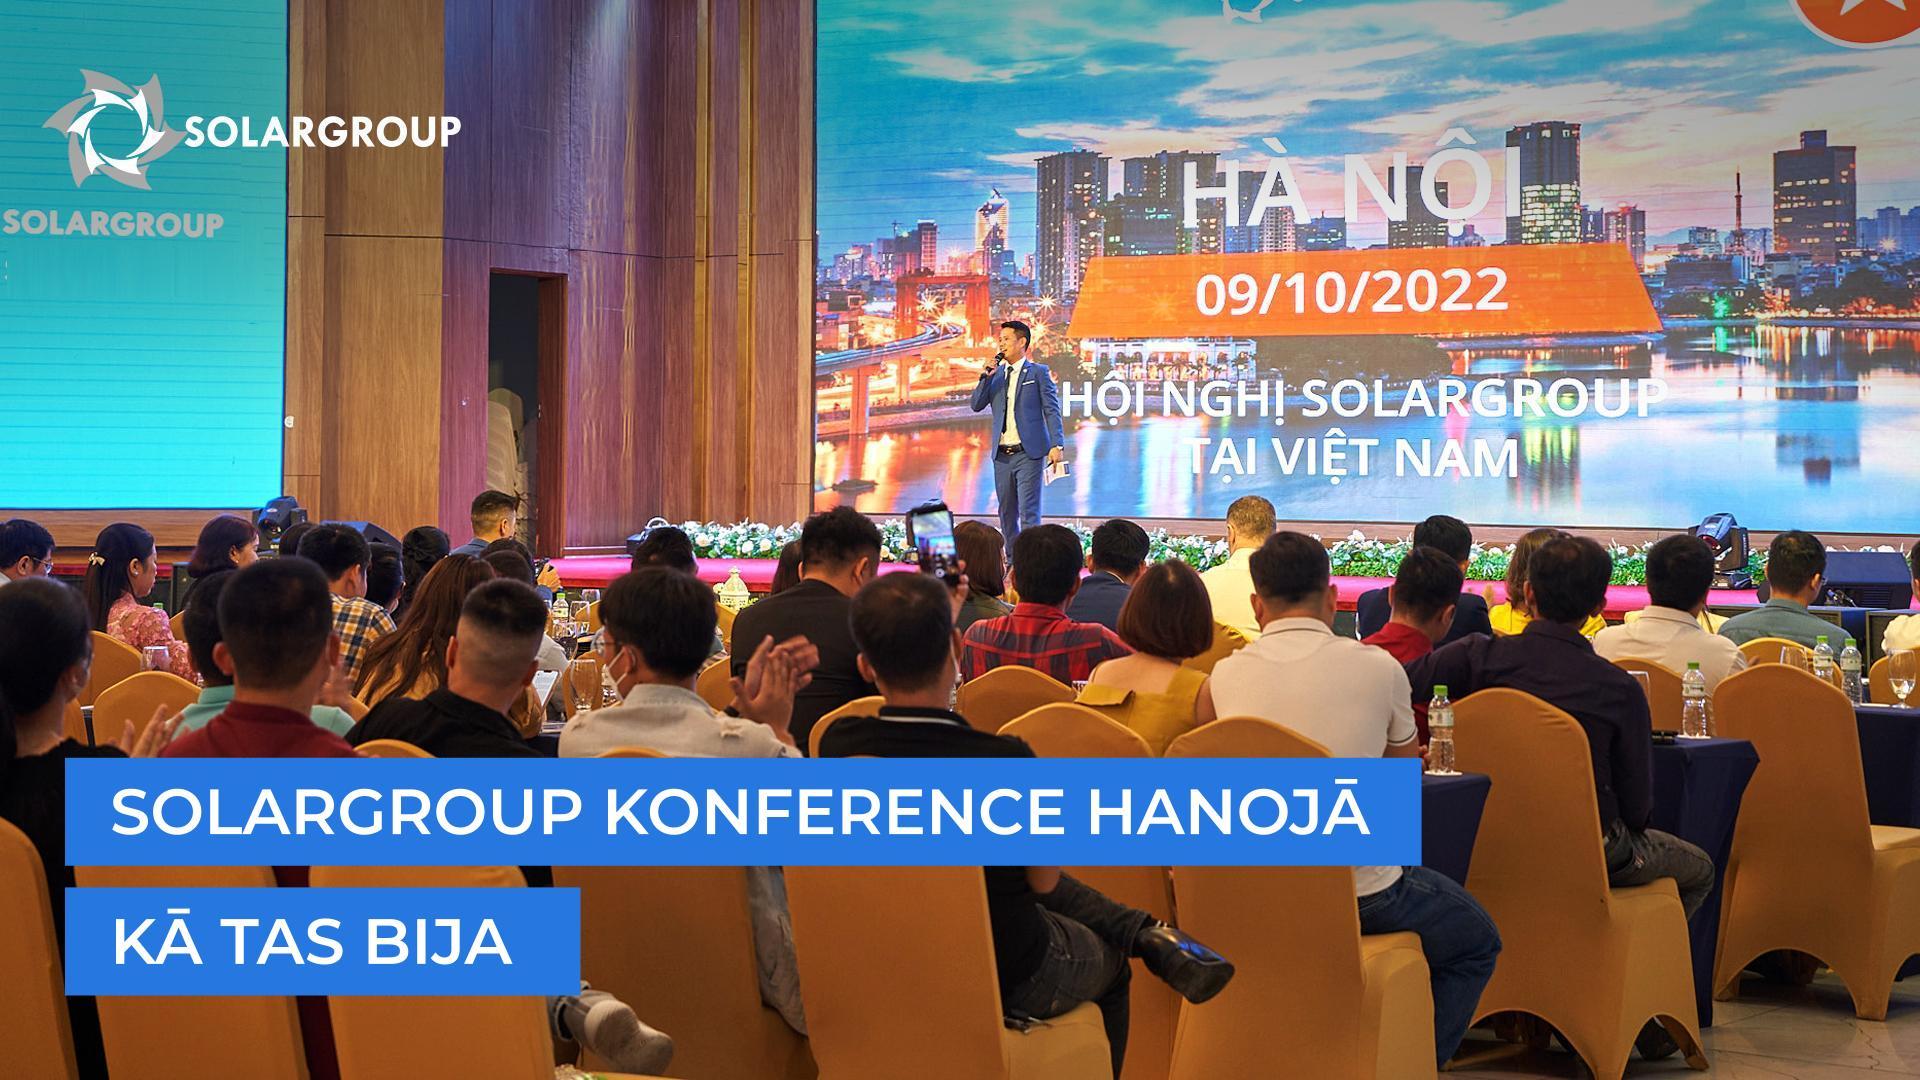 SOLARGROUP konference Hanojā: kā tās bija